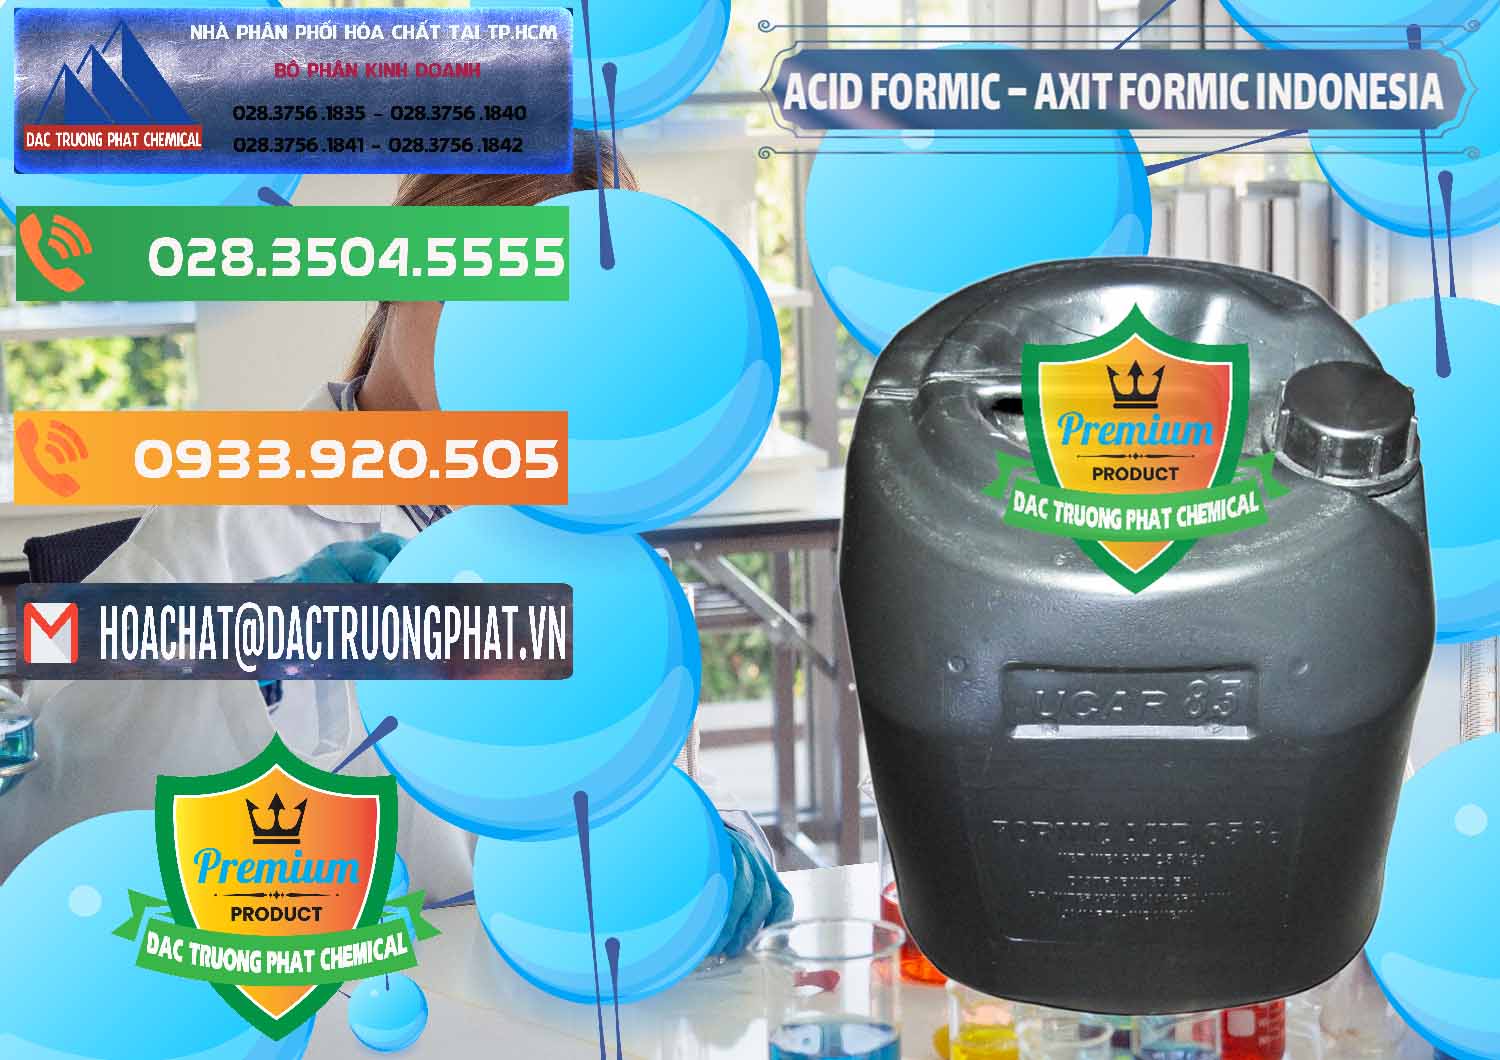 Công ty chuyên bán & cung ứng Acid Formic - Axit Formic Indonesia - 0026 - Công ty chuyên bán và cung cấp hóa chất tại TP.HCM - hoachatxulynuoc.com.vn